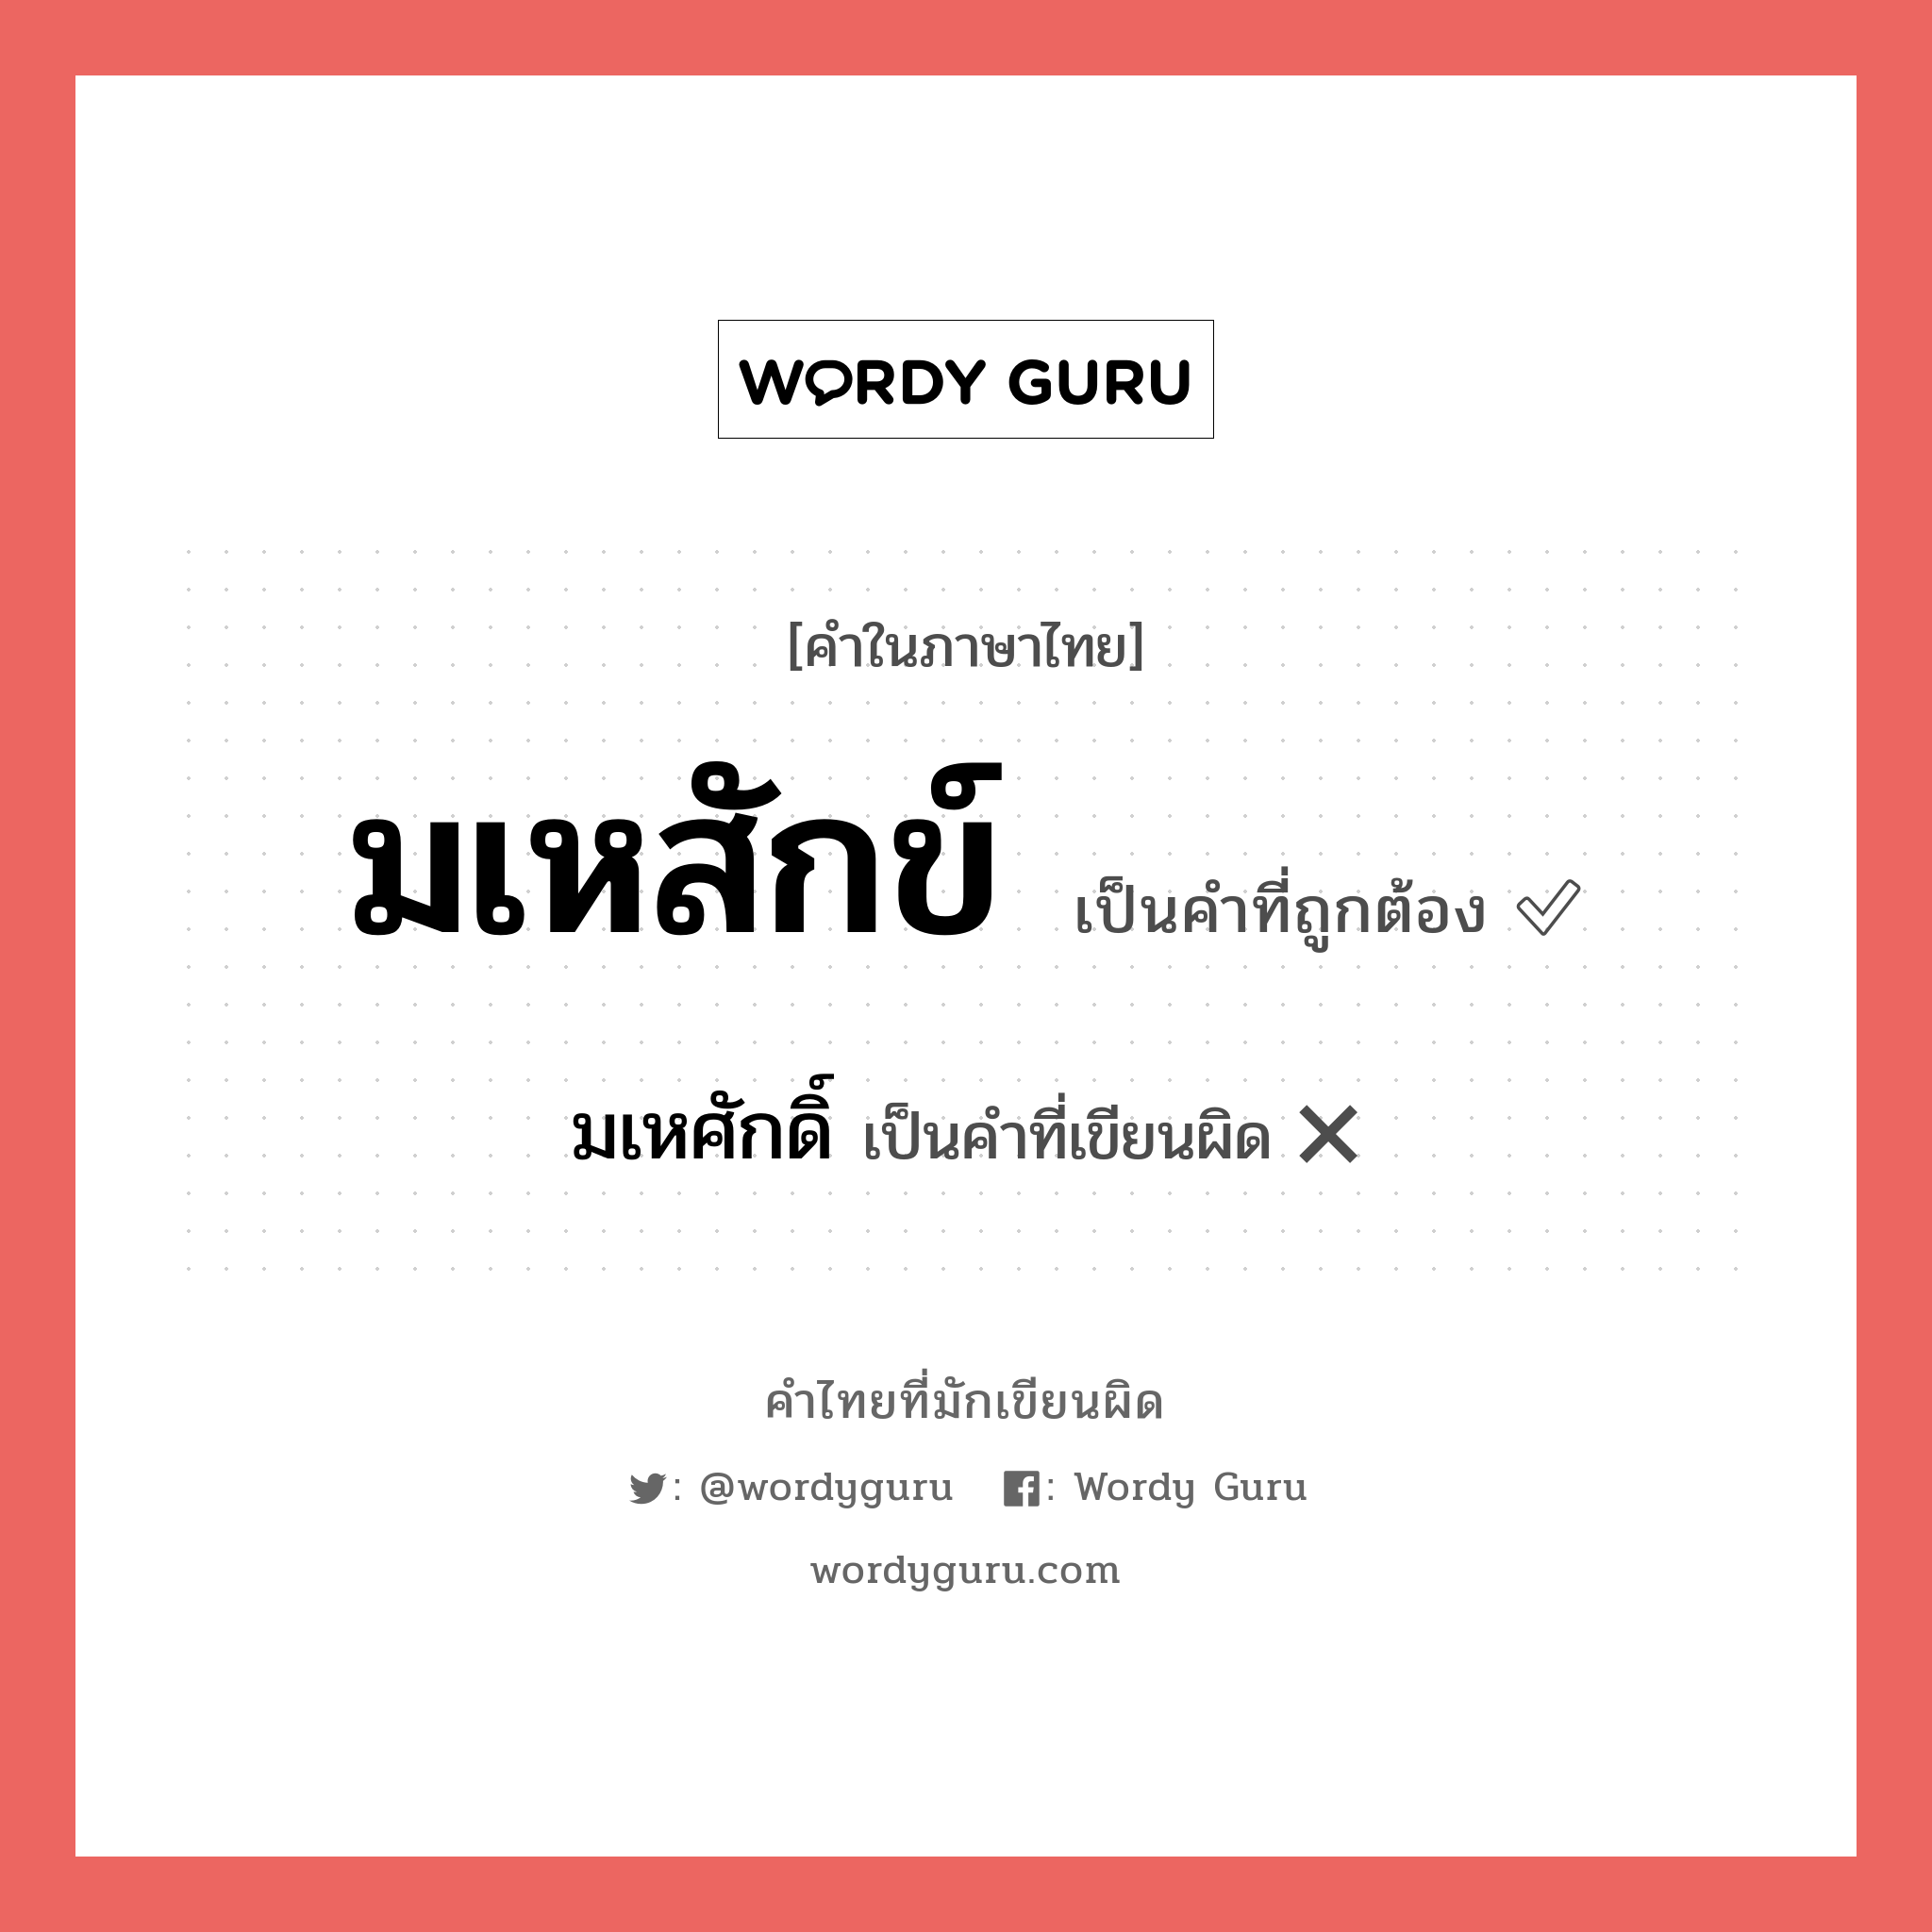 มเหสักข์ หรือ มเหศักดิ์ คำไหนเขียนถูก?, คำในภาษาไทยที่มักเขียนผิด มเหสักข์ คำที่ผิด ❌ มเหศักดิ์